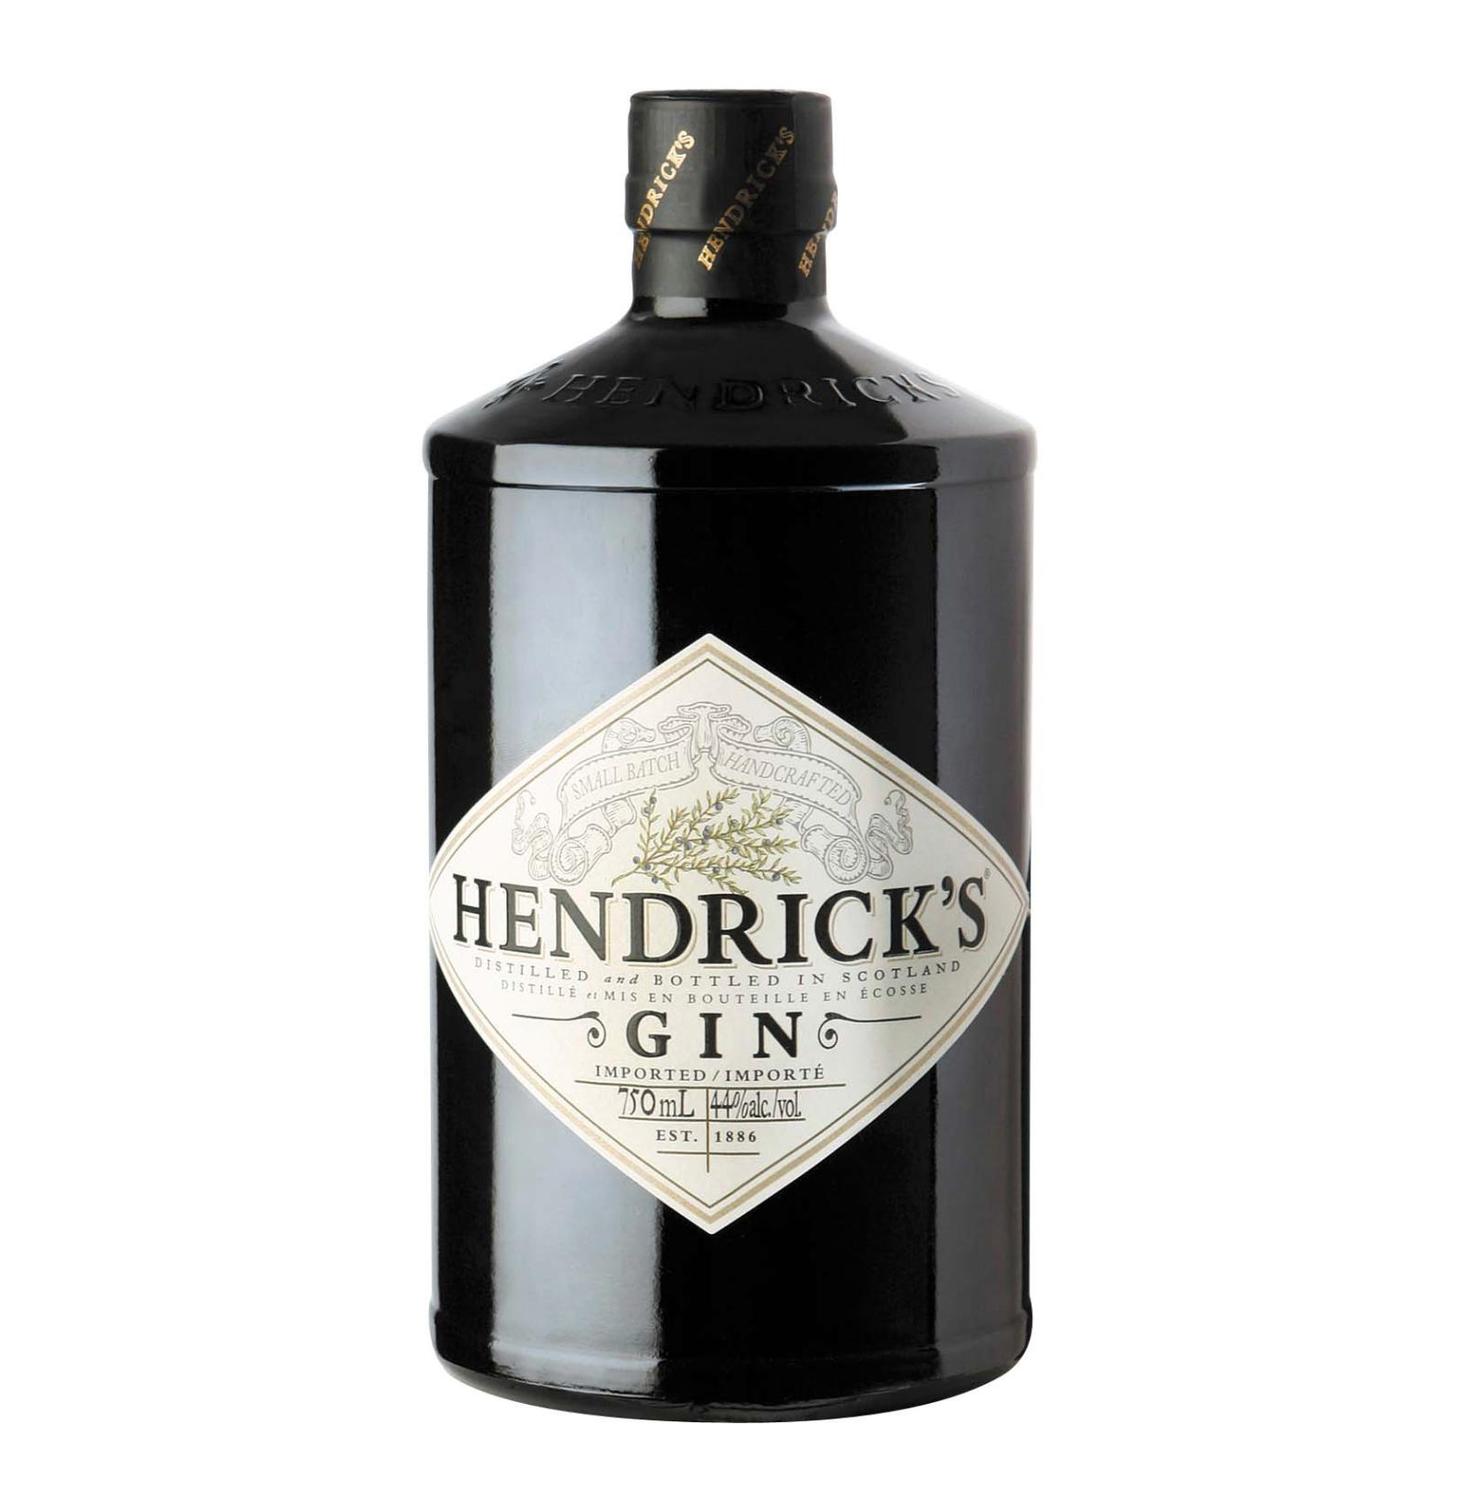 HENDRICKS GIN .750 for only $30.49 in online liquor store.